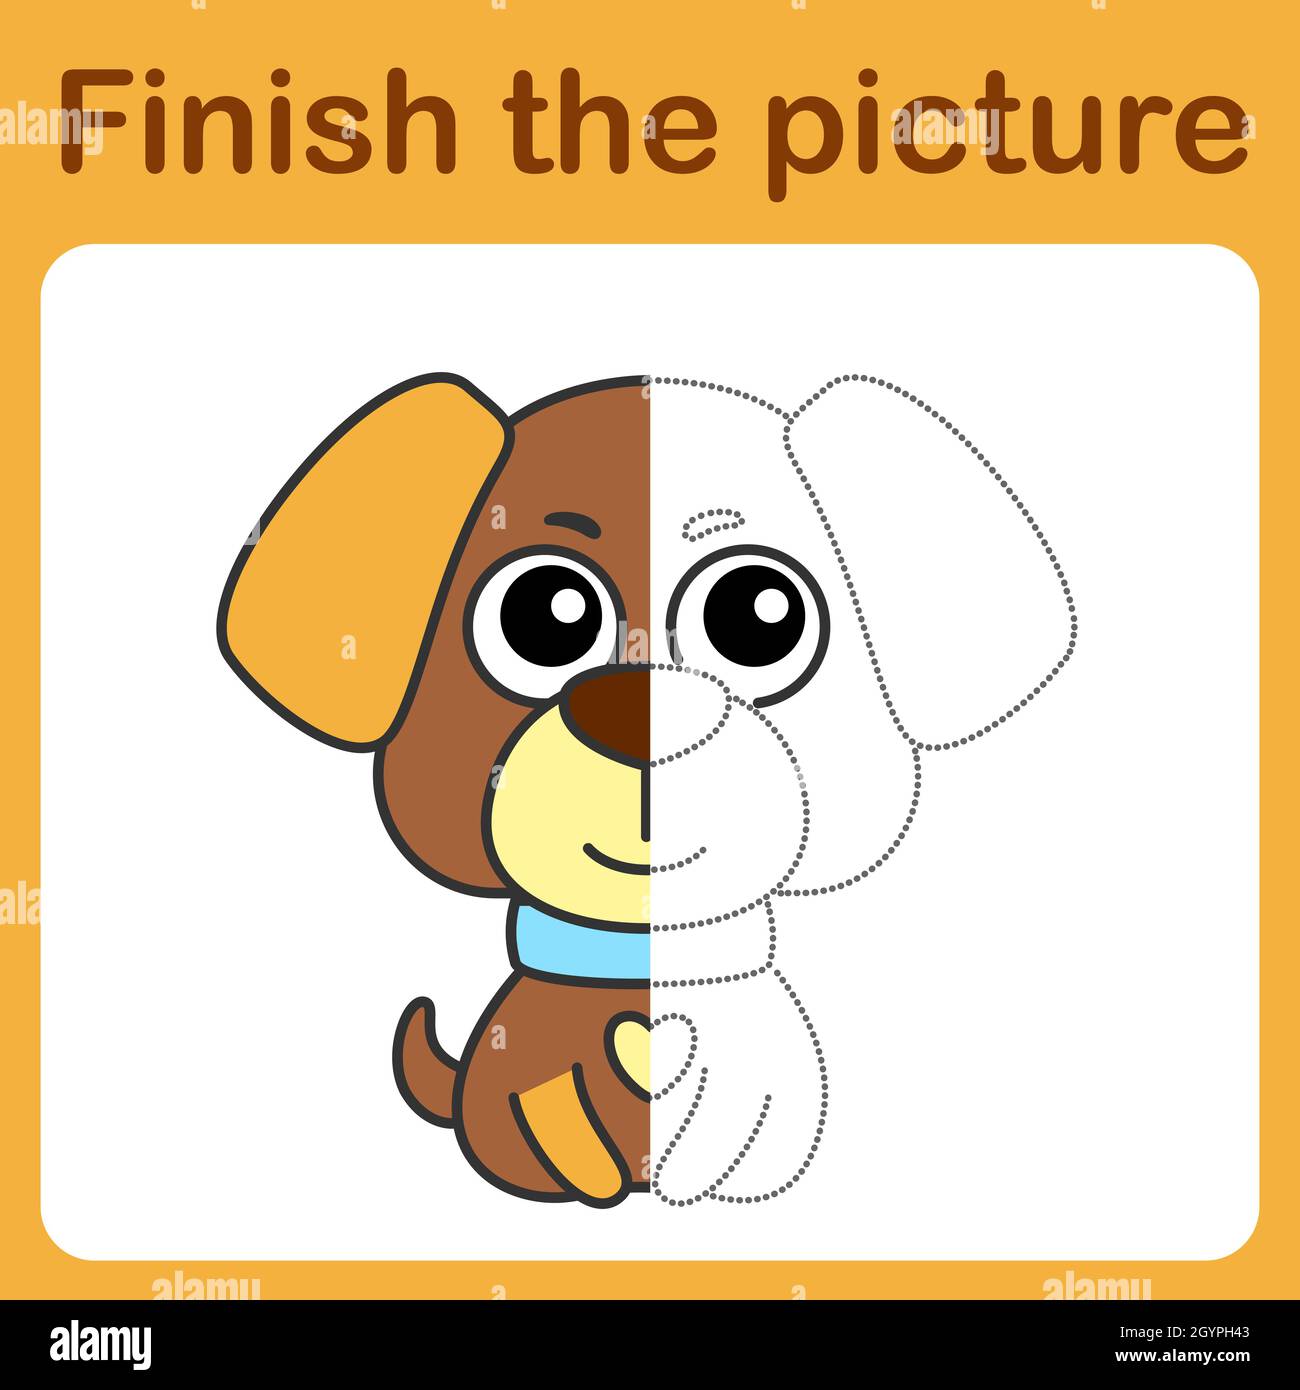 Como dibujar una Huella de Perro / Dibuja y Colorea una Huella de Perro /  Dibujos para niños 